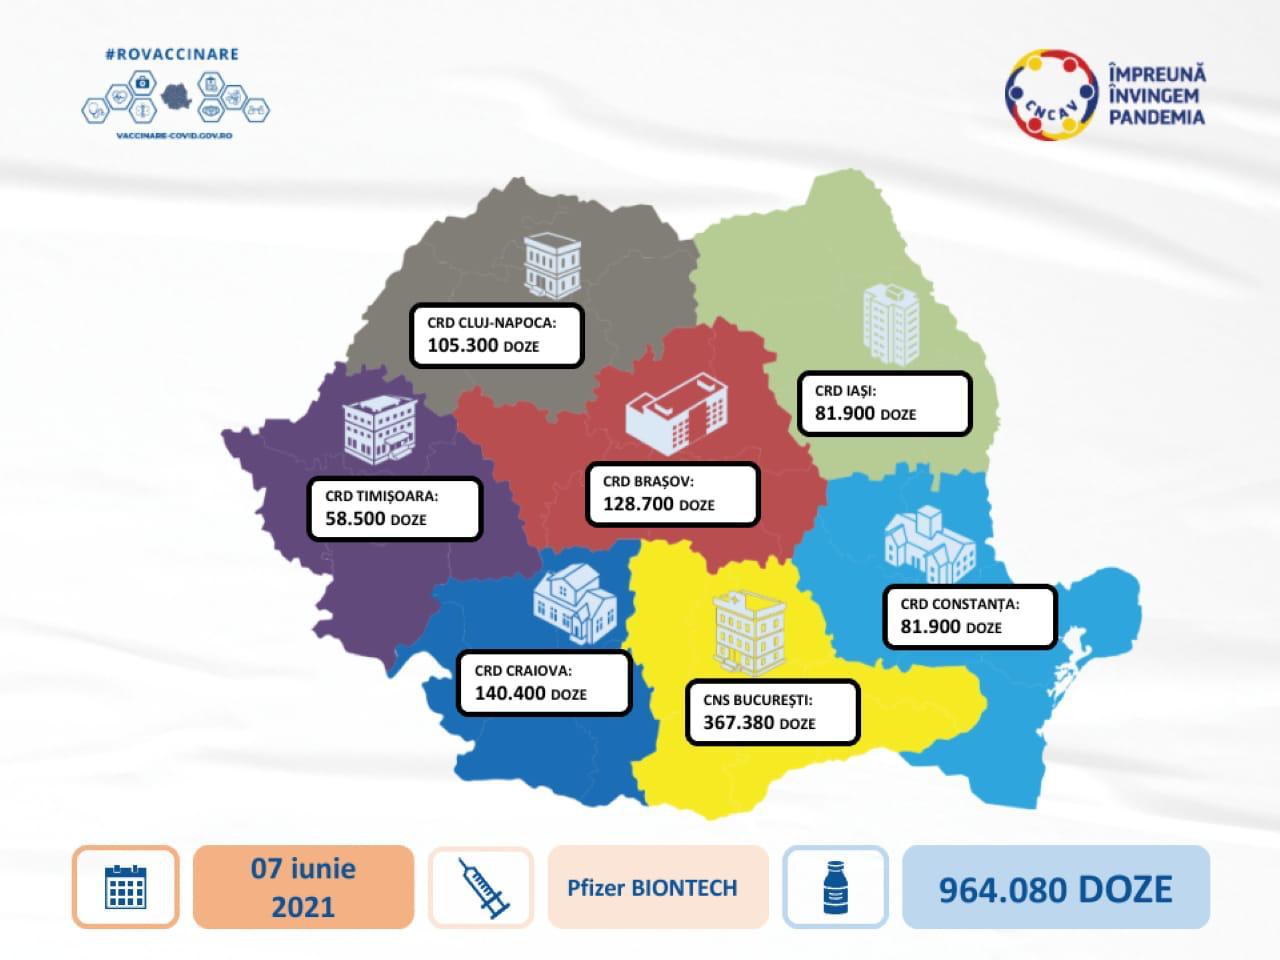 964.080 doses van het pfizer biontech-vaccin bereikten Roemenië voor distributie